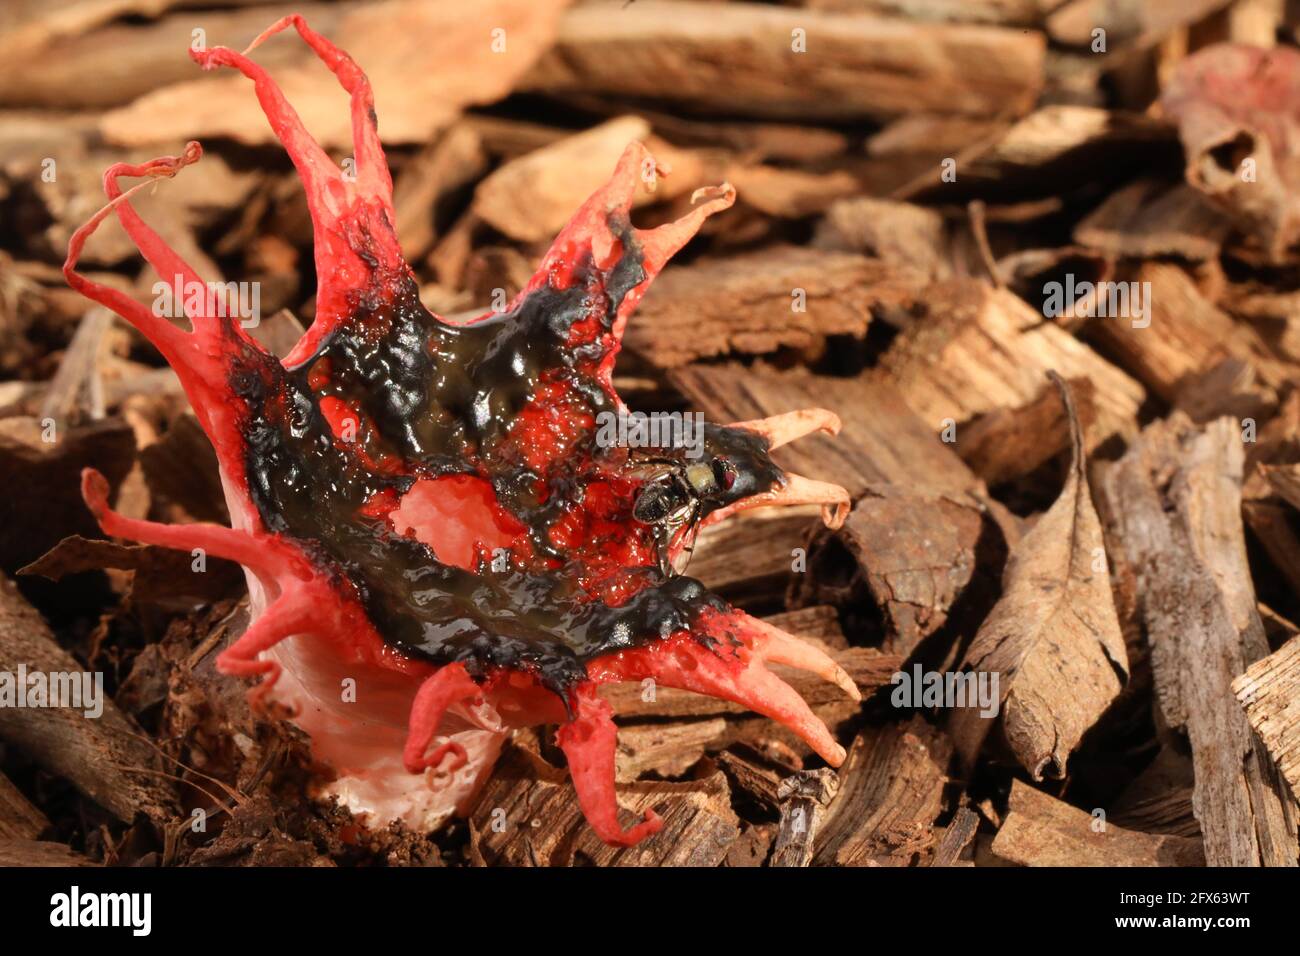 Un primo piano del fungo australiano Stinkhorn con una mosca o un'ape nativa seduto su di esso. Polpa rossa guardando funghi puzzolenti puzzolenti su pacciame di legno Foto Stock